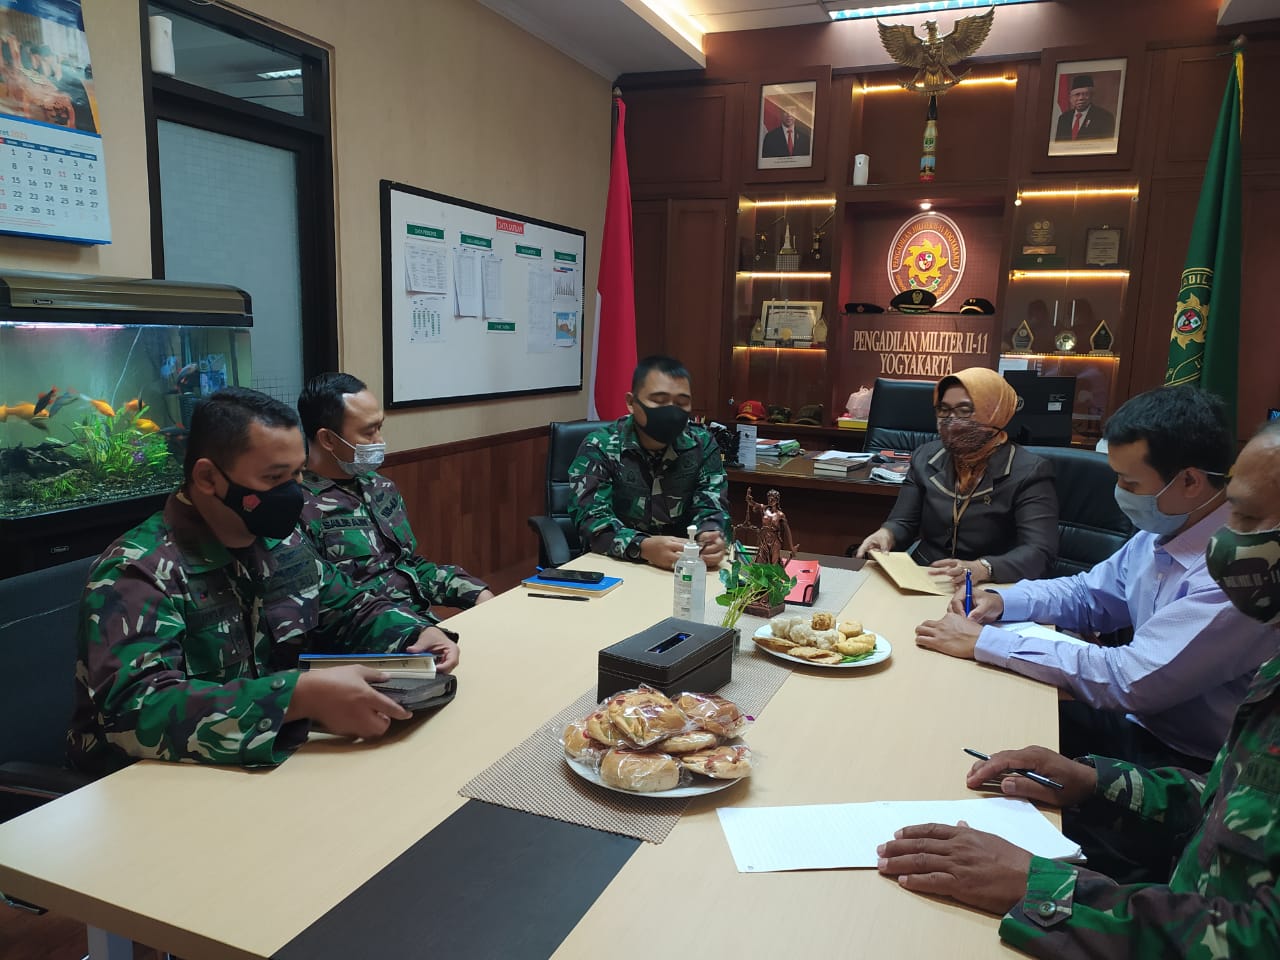 Kunjungan Studi Banding dan Menjalin Kerjasama antara Ketua Pengadilan Negeri Yogyakarta dengan Ketua Pengadilan Militer II-11 Yogyakarta